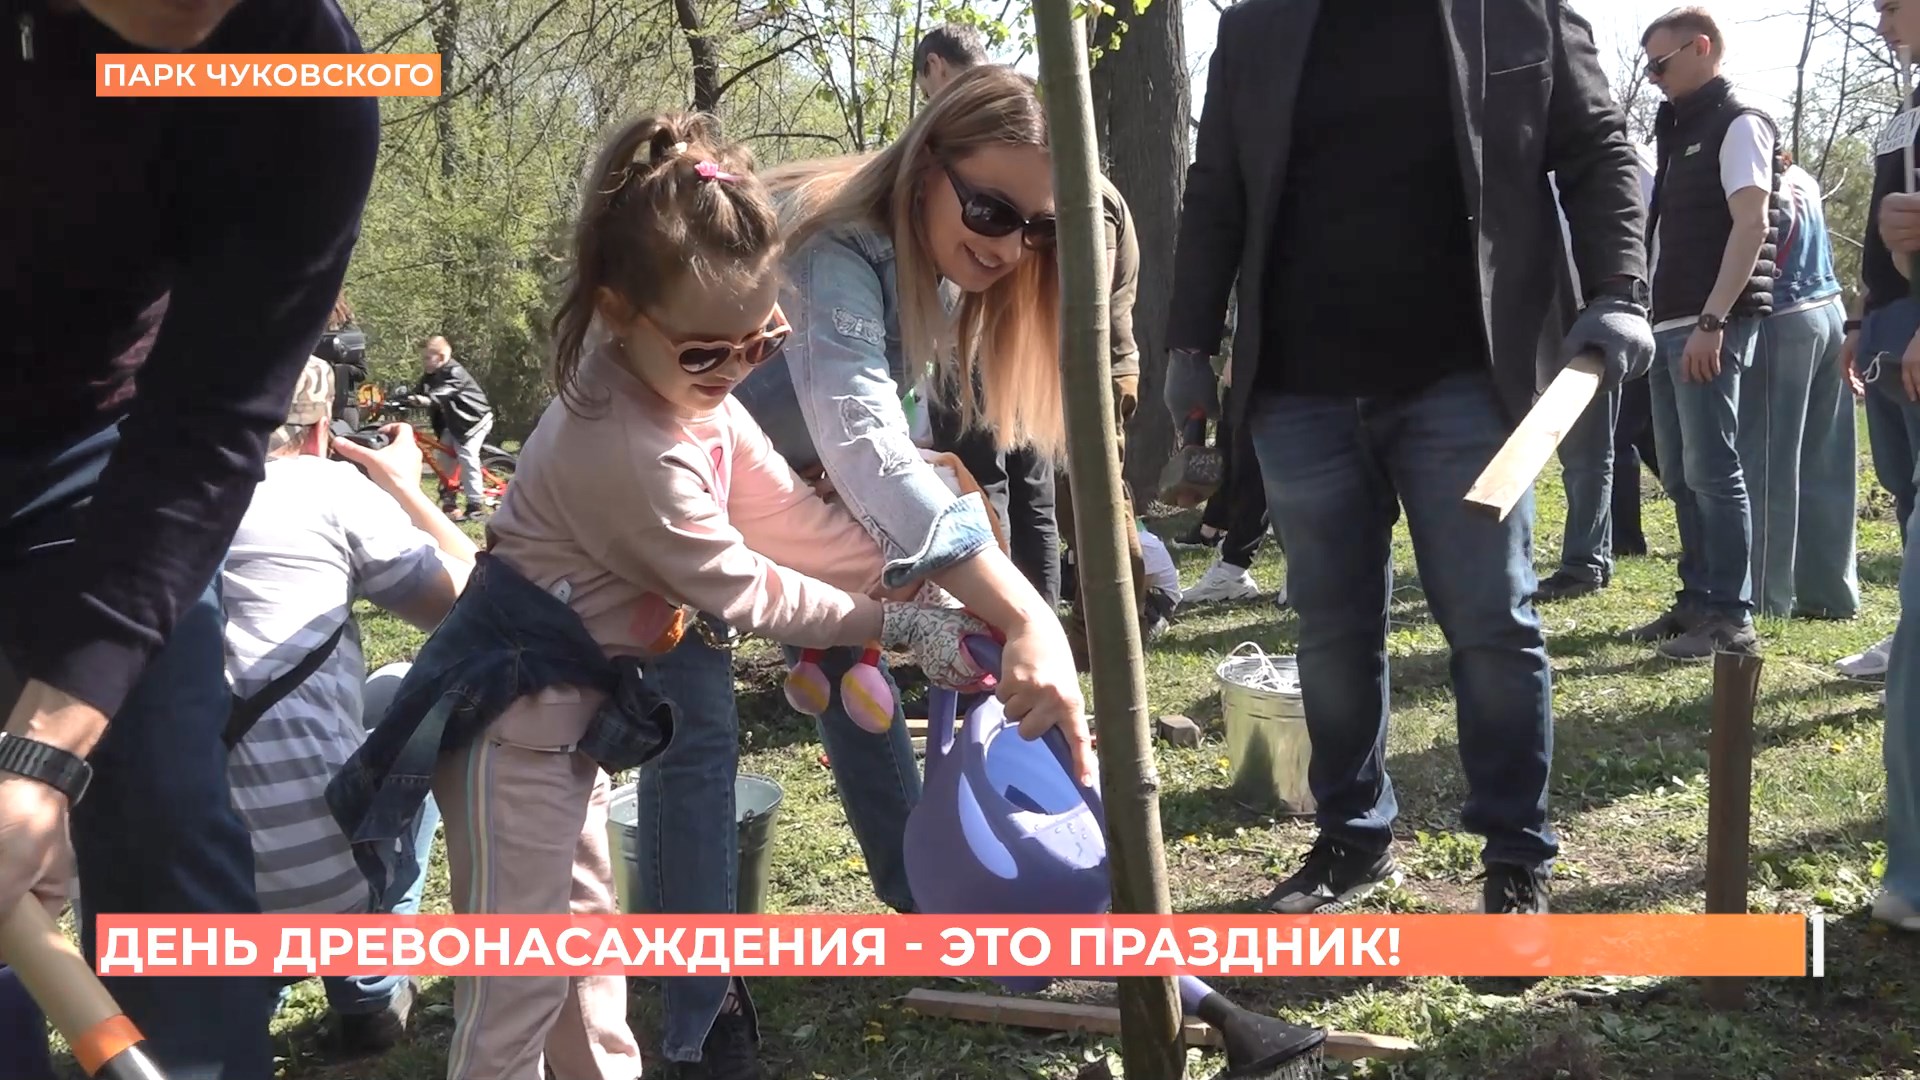 Праздник устроили в День древонасаждения в ростовском парке им. Чуковского